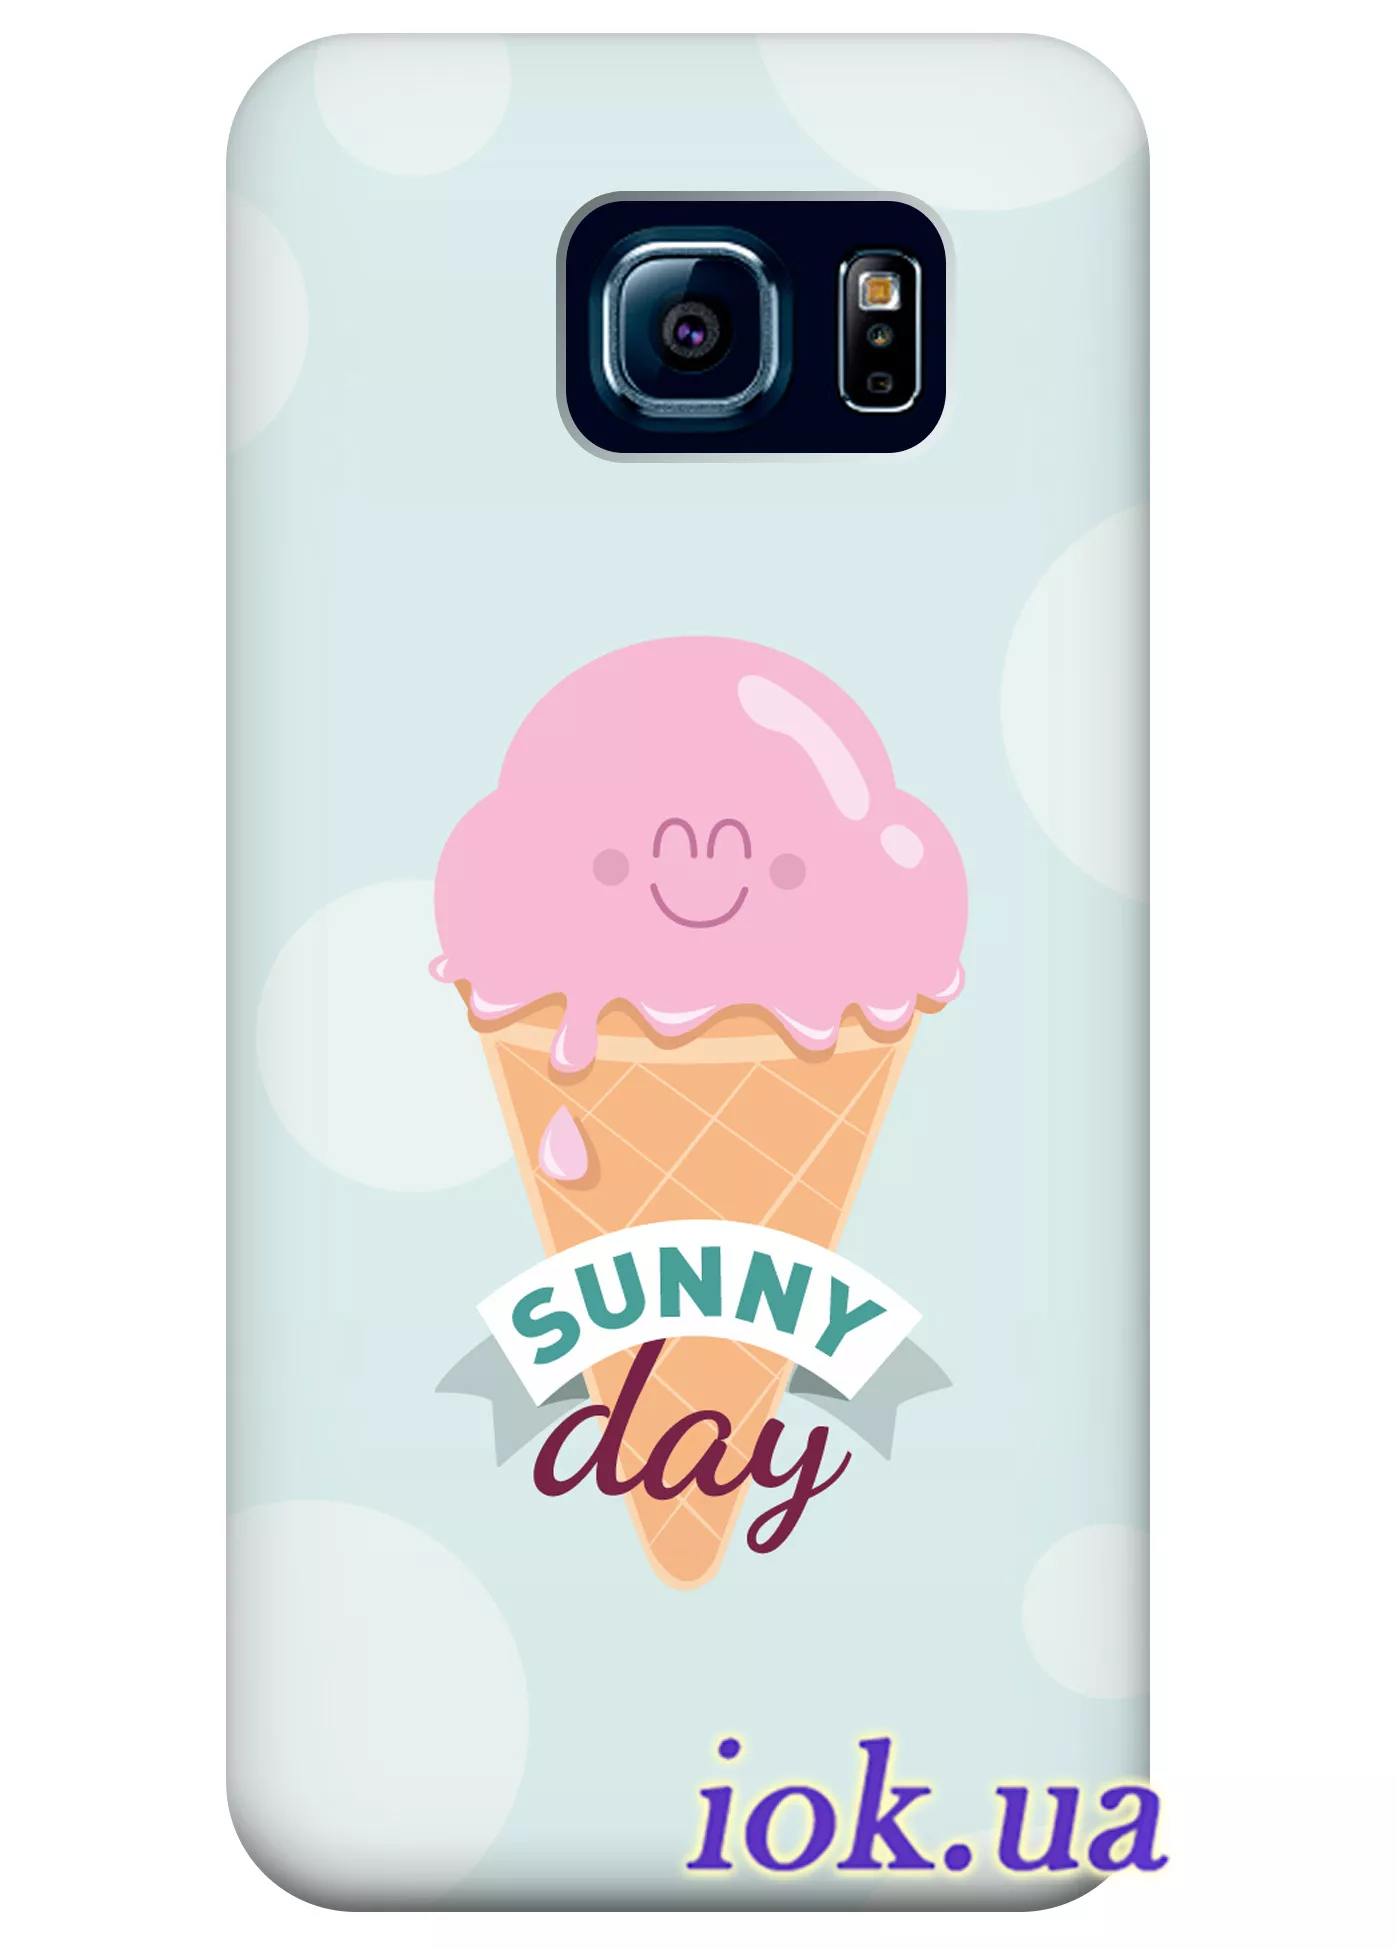 Чехол для Galaxy S6 Edge Plus - Sunny day